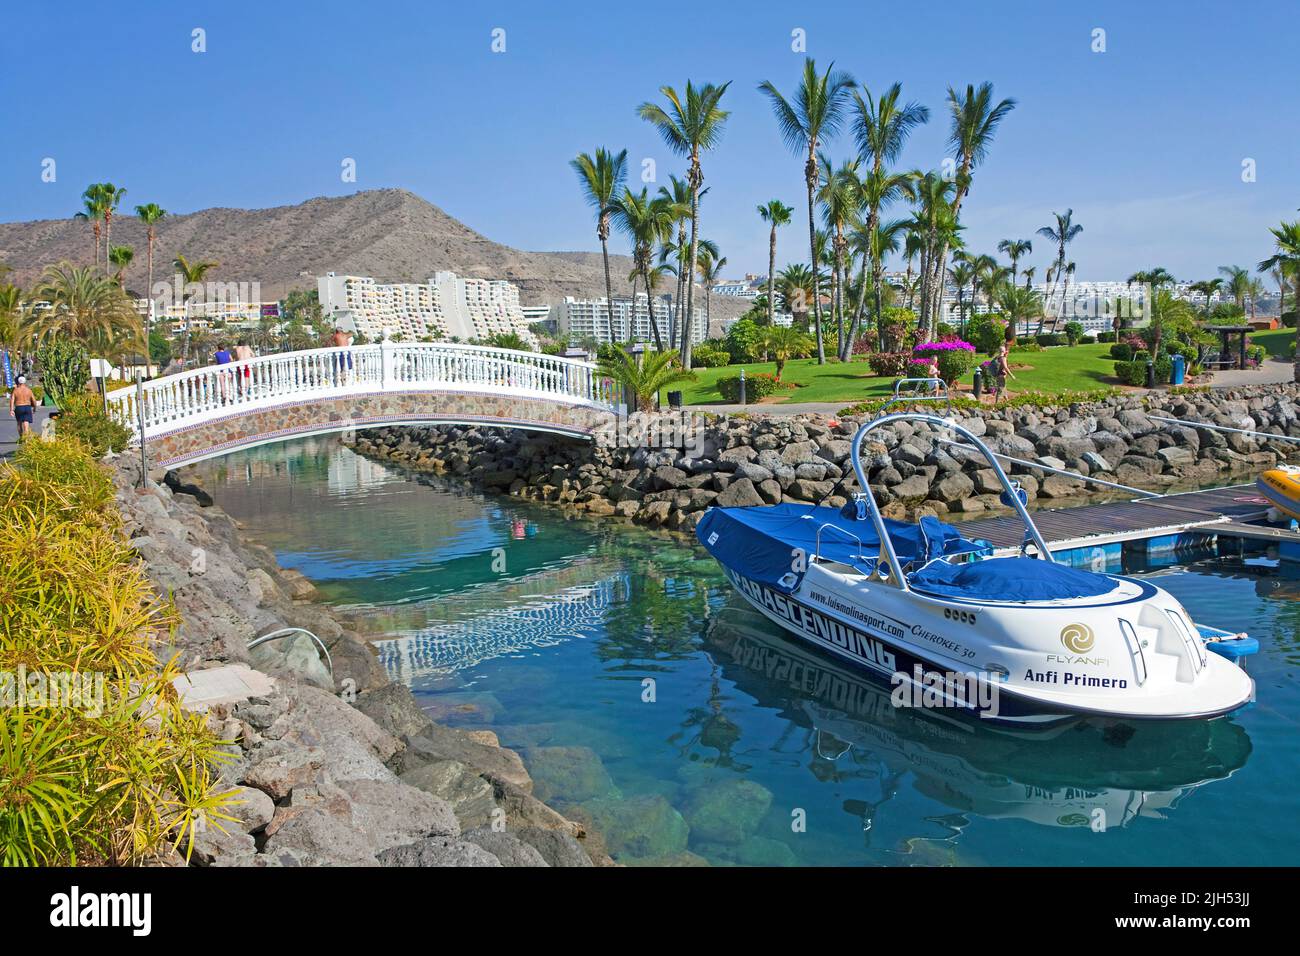 Brücke über einen künstlichen Kanal bei Playa de la Verga, Anfi del Mar, Arguineguin, Grand Canary, Kanarische Inseln, Spanien, Europa Stockfoto